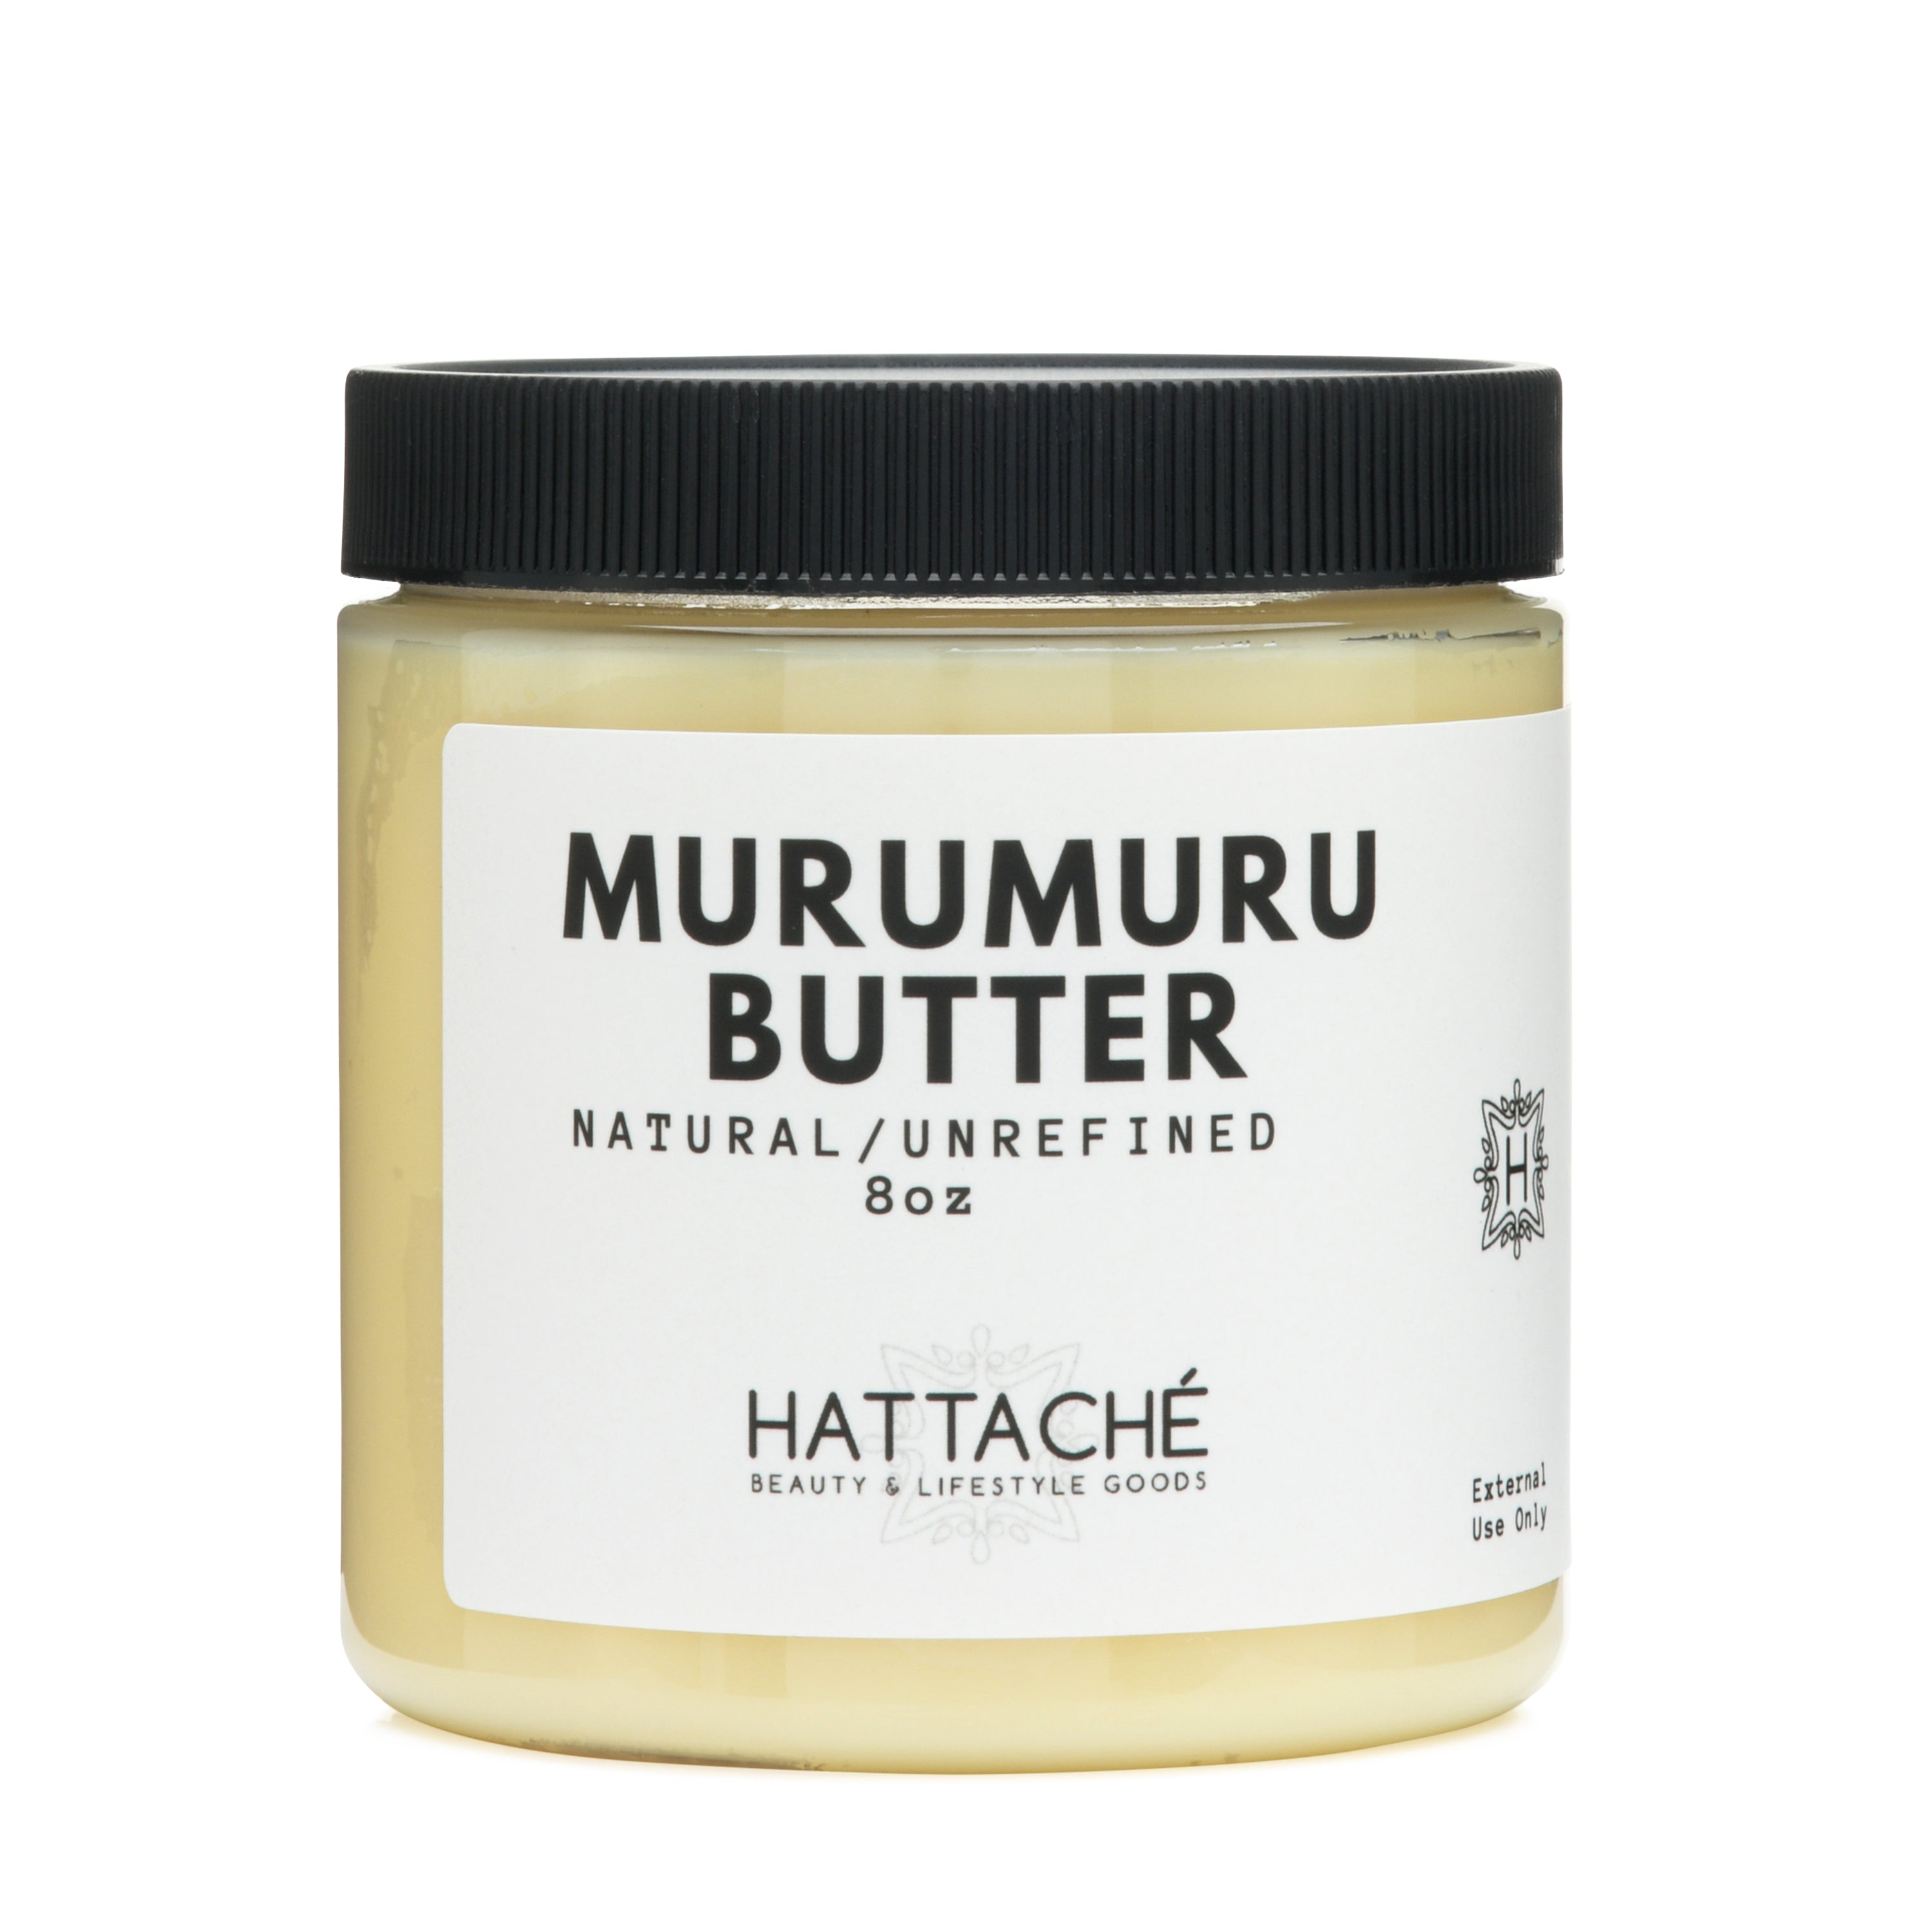 Hattache Natural Butter for Hair + Skin - Murumuru Butter (Unrefined) –  Hattaché Beauty & Lifestyle Goods